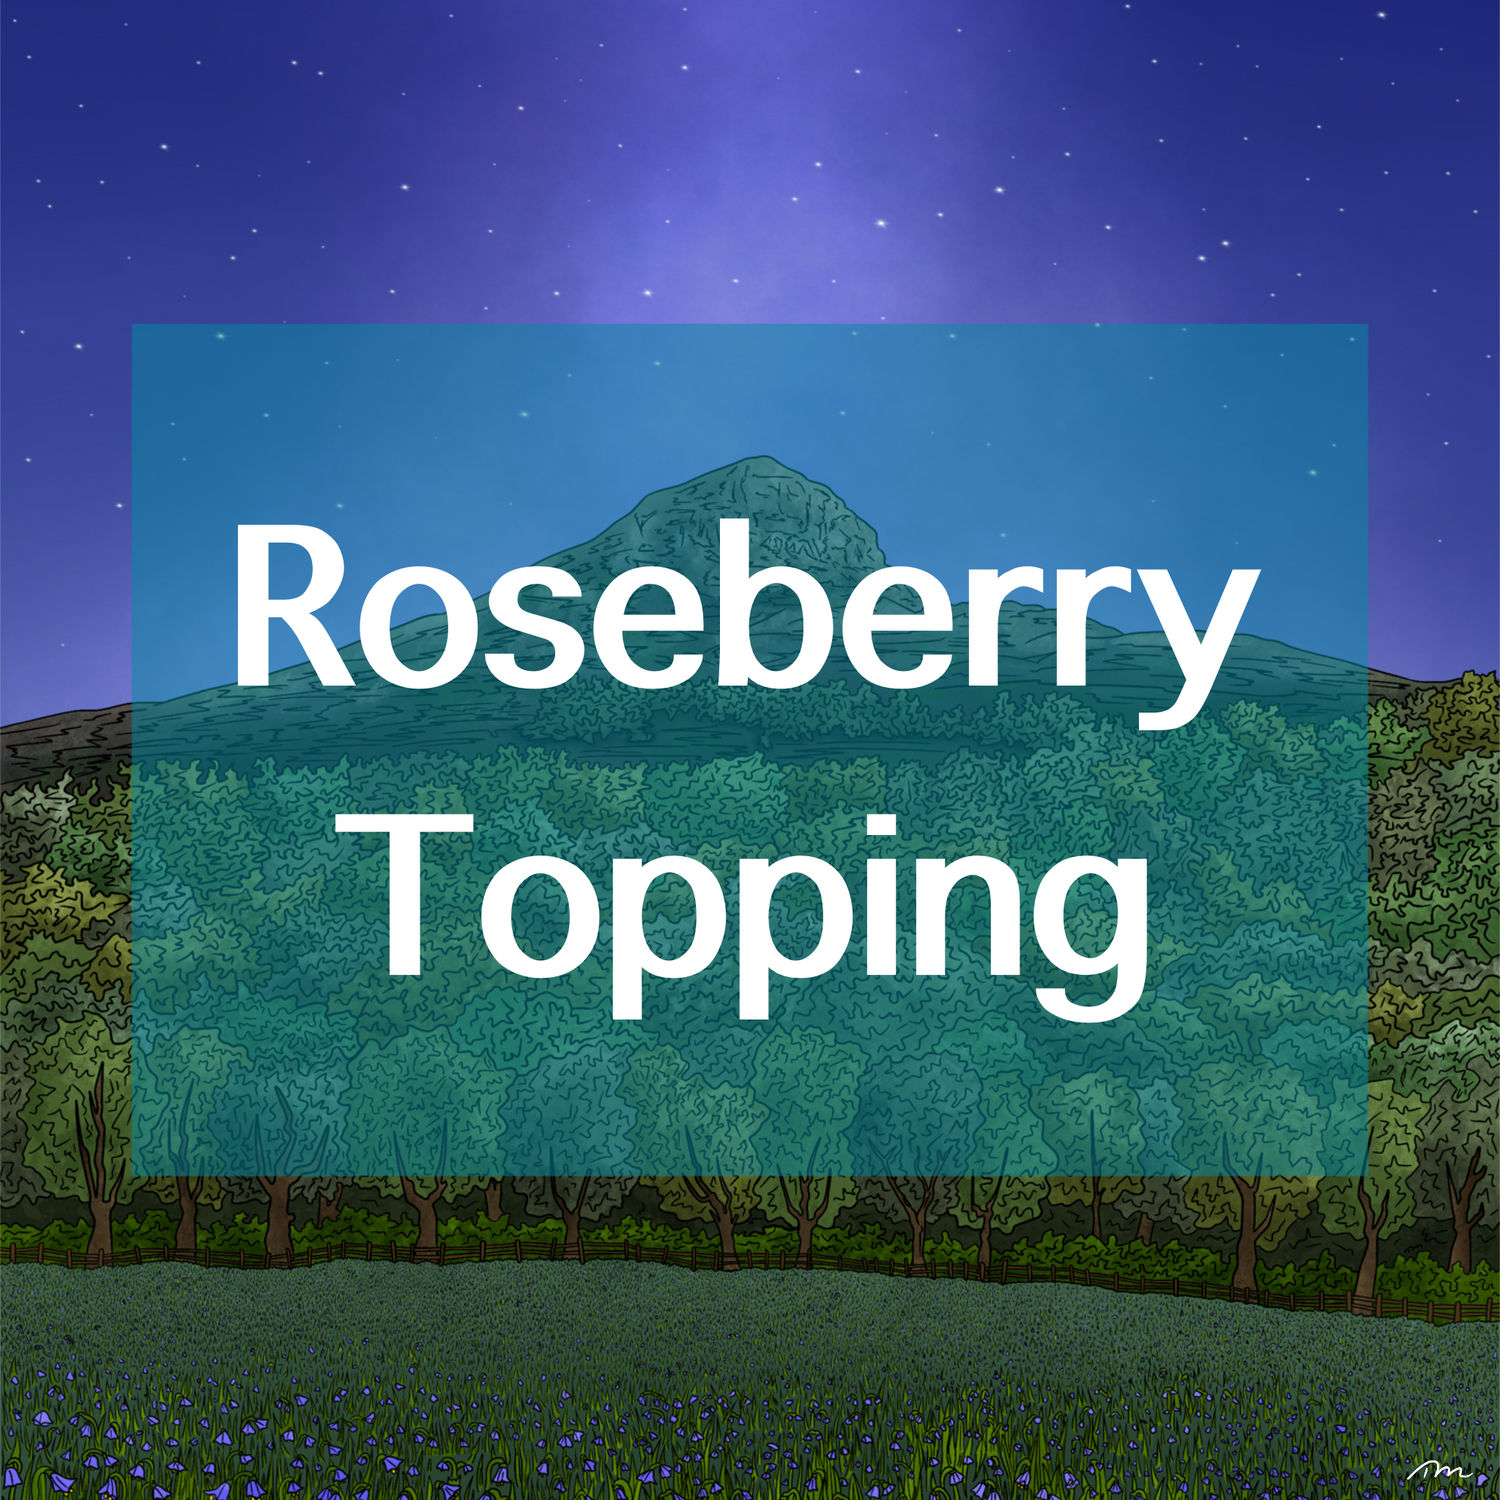 Roseberry Topping